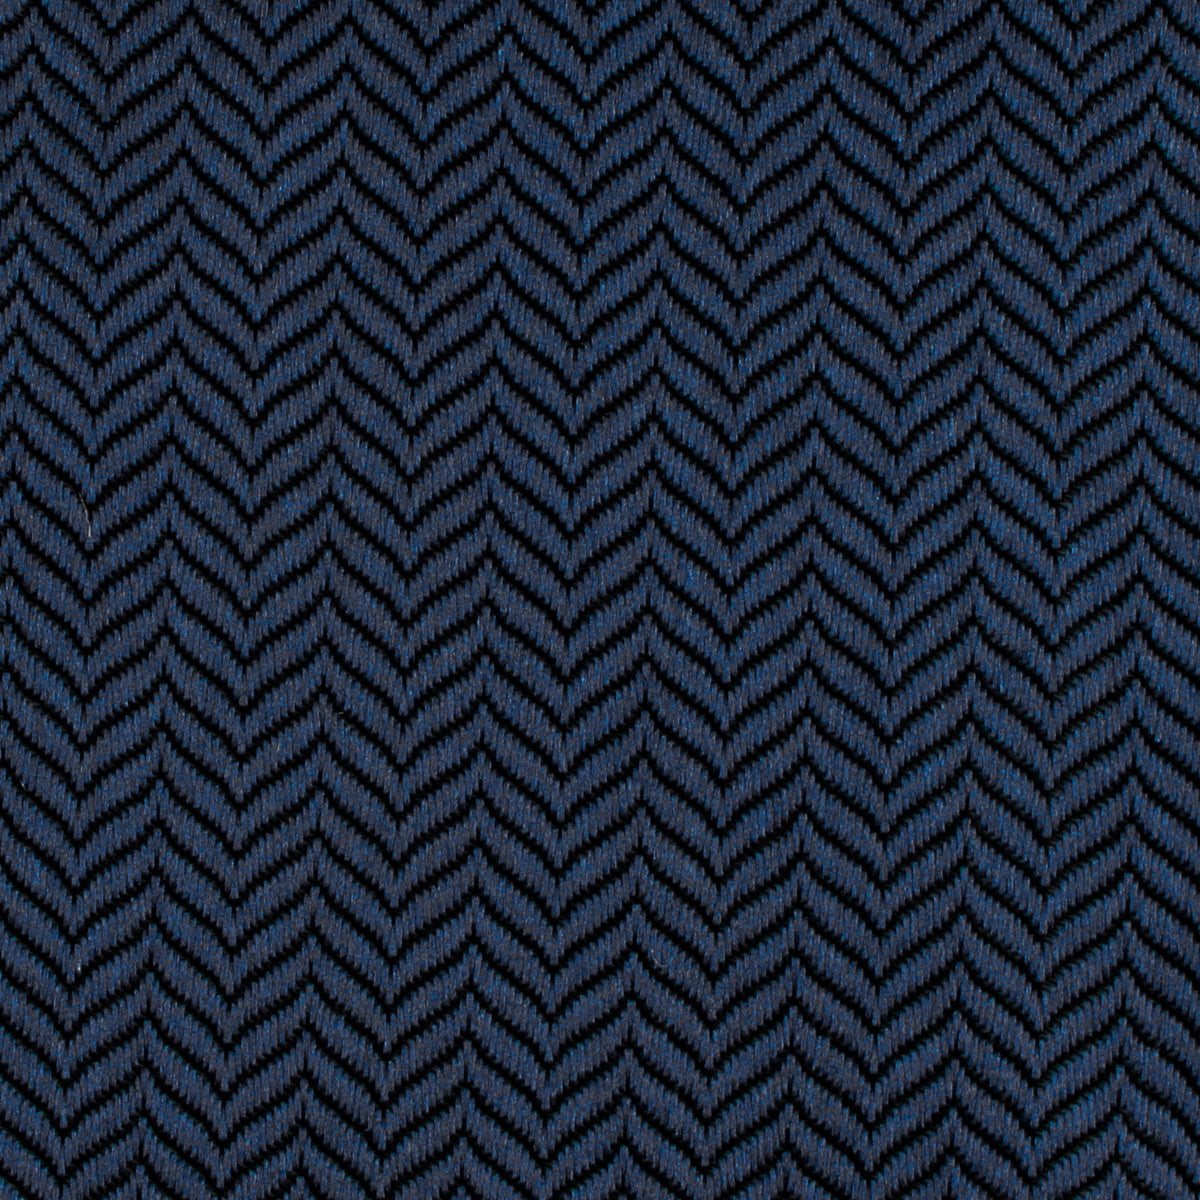 Indigo Blue Herringbone Necktie Fabric